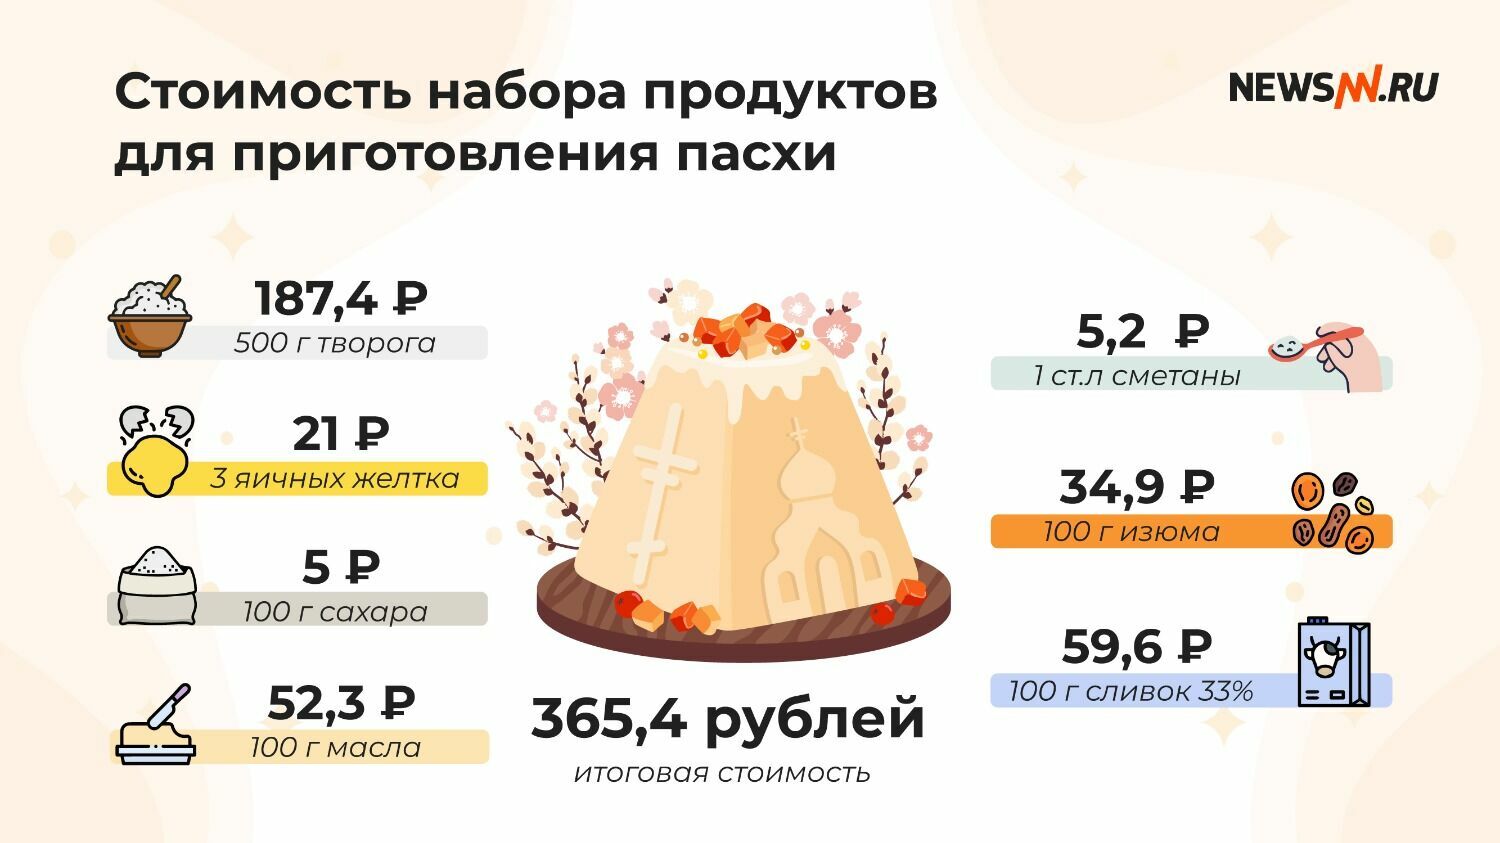 Стоимость набора продуктов для приготовления пасхи в Нижнем Новгороде